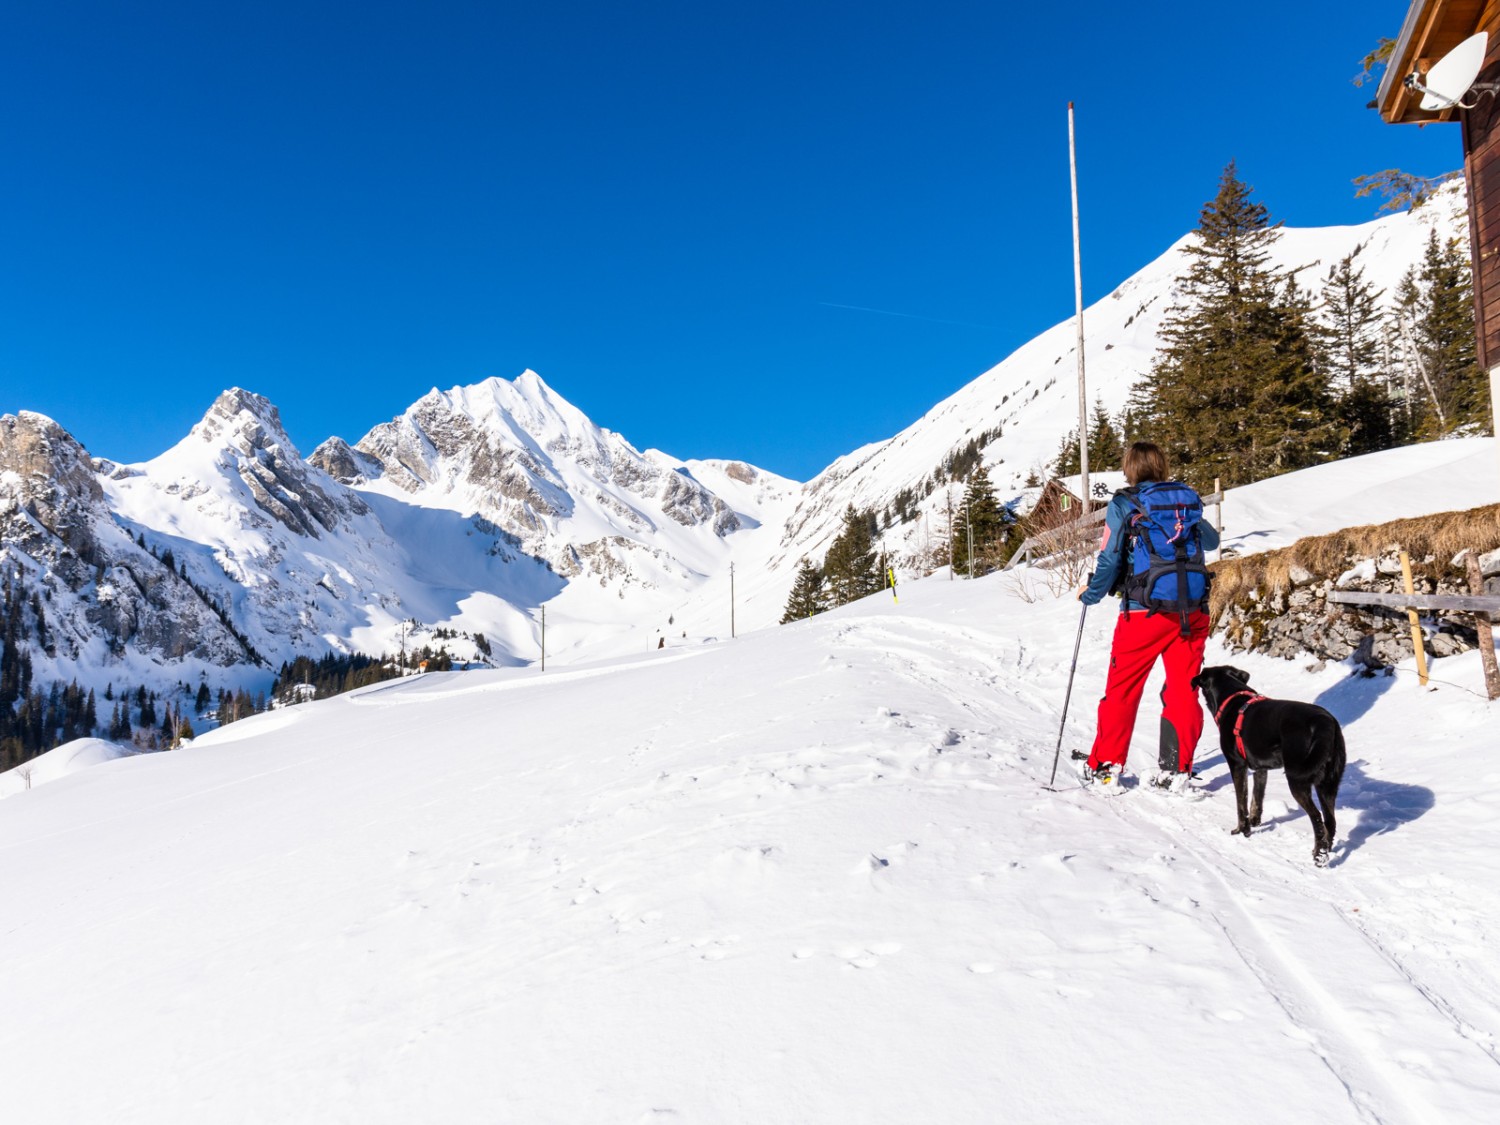 Bald ist es geschafft: von hier hört man schon den munteren Betrieb des kleinen Skigebiets. Bild: Franz Ulrich